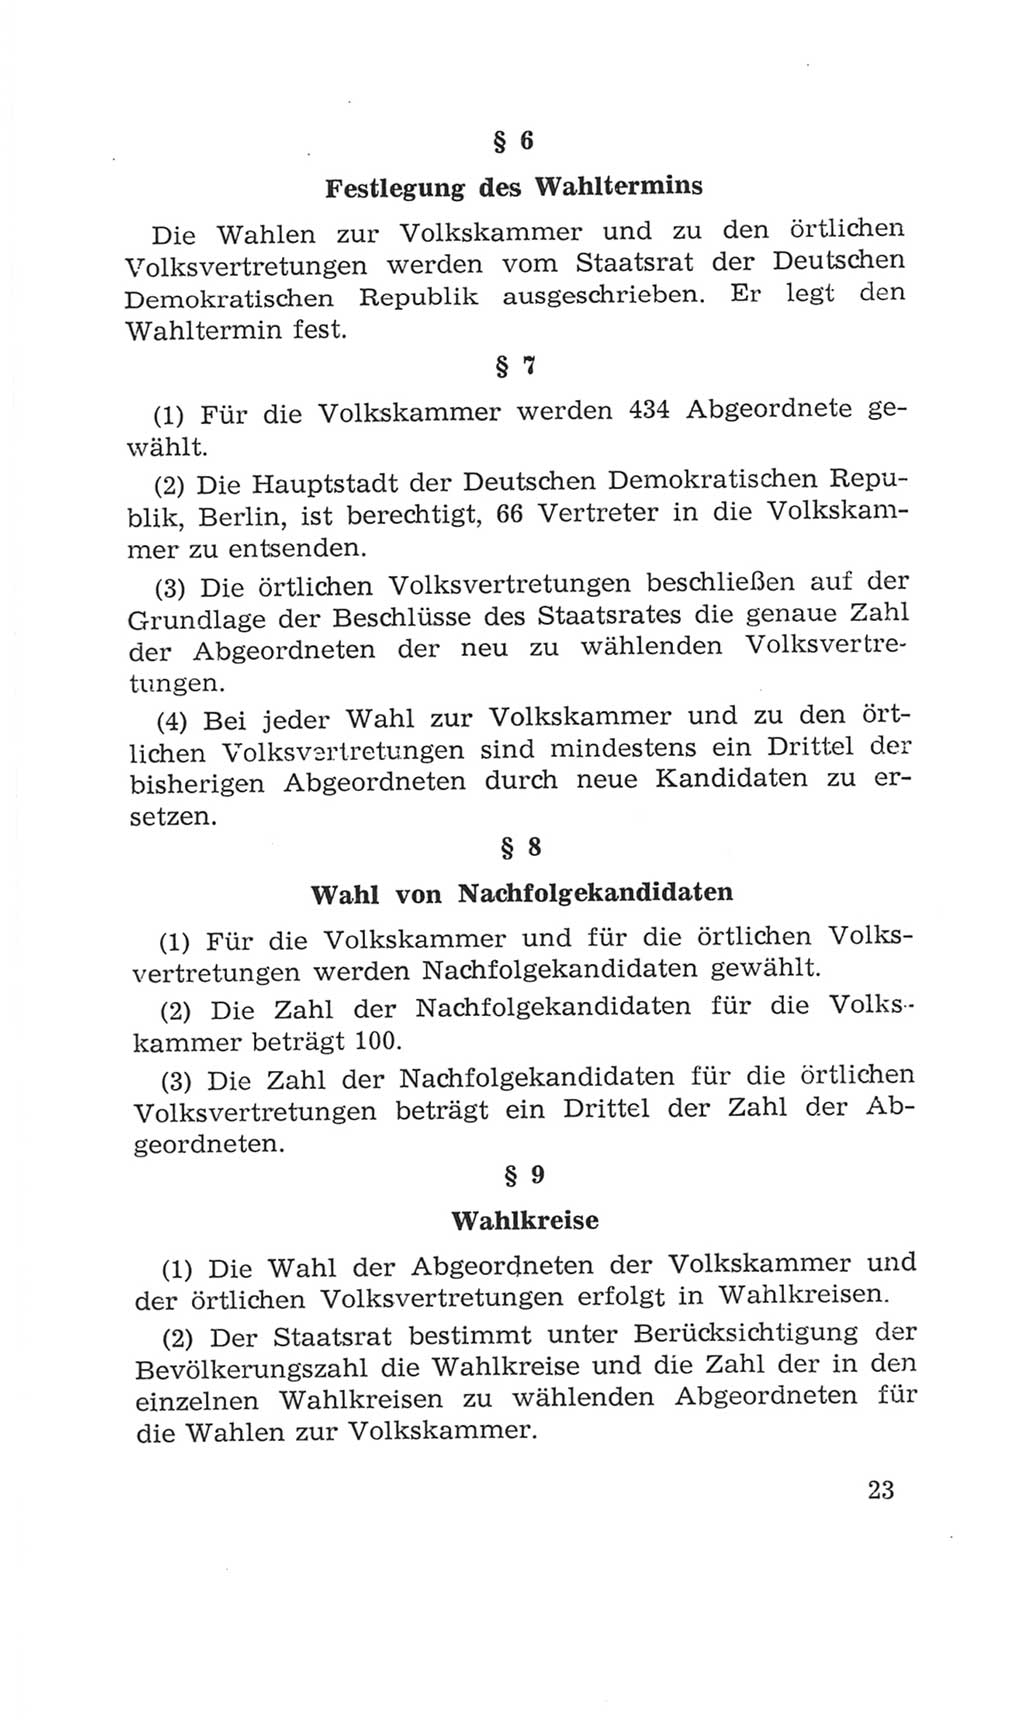 Volkskammer (VK) der Deutschen Demokratischen Republik (DDR), 4. Wahlperiode 1963-1967, Seite 23 (VK. DDR 4. WP. 1963-1967, S. 23)